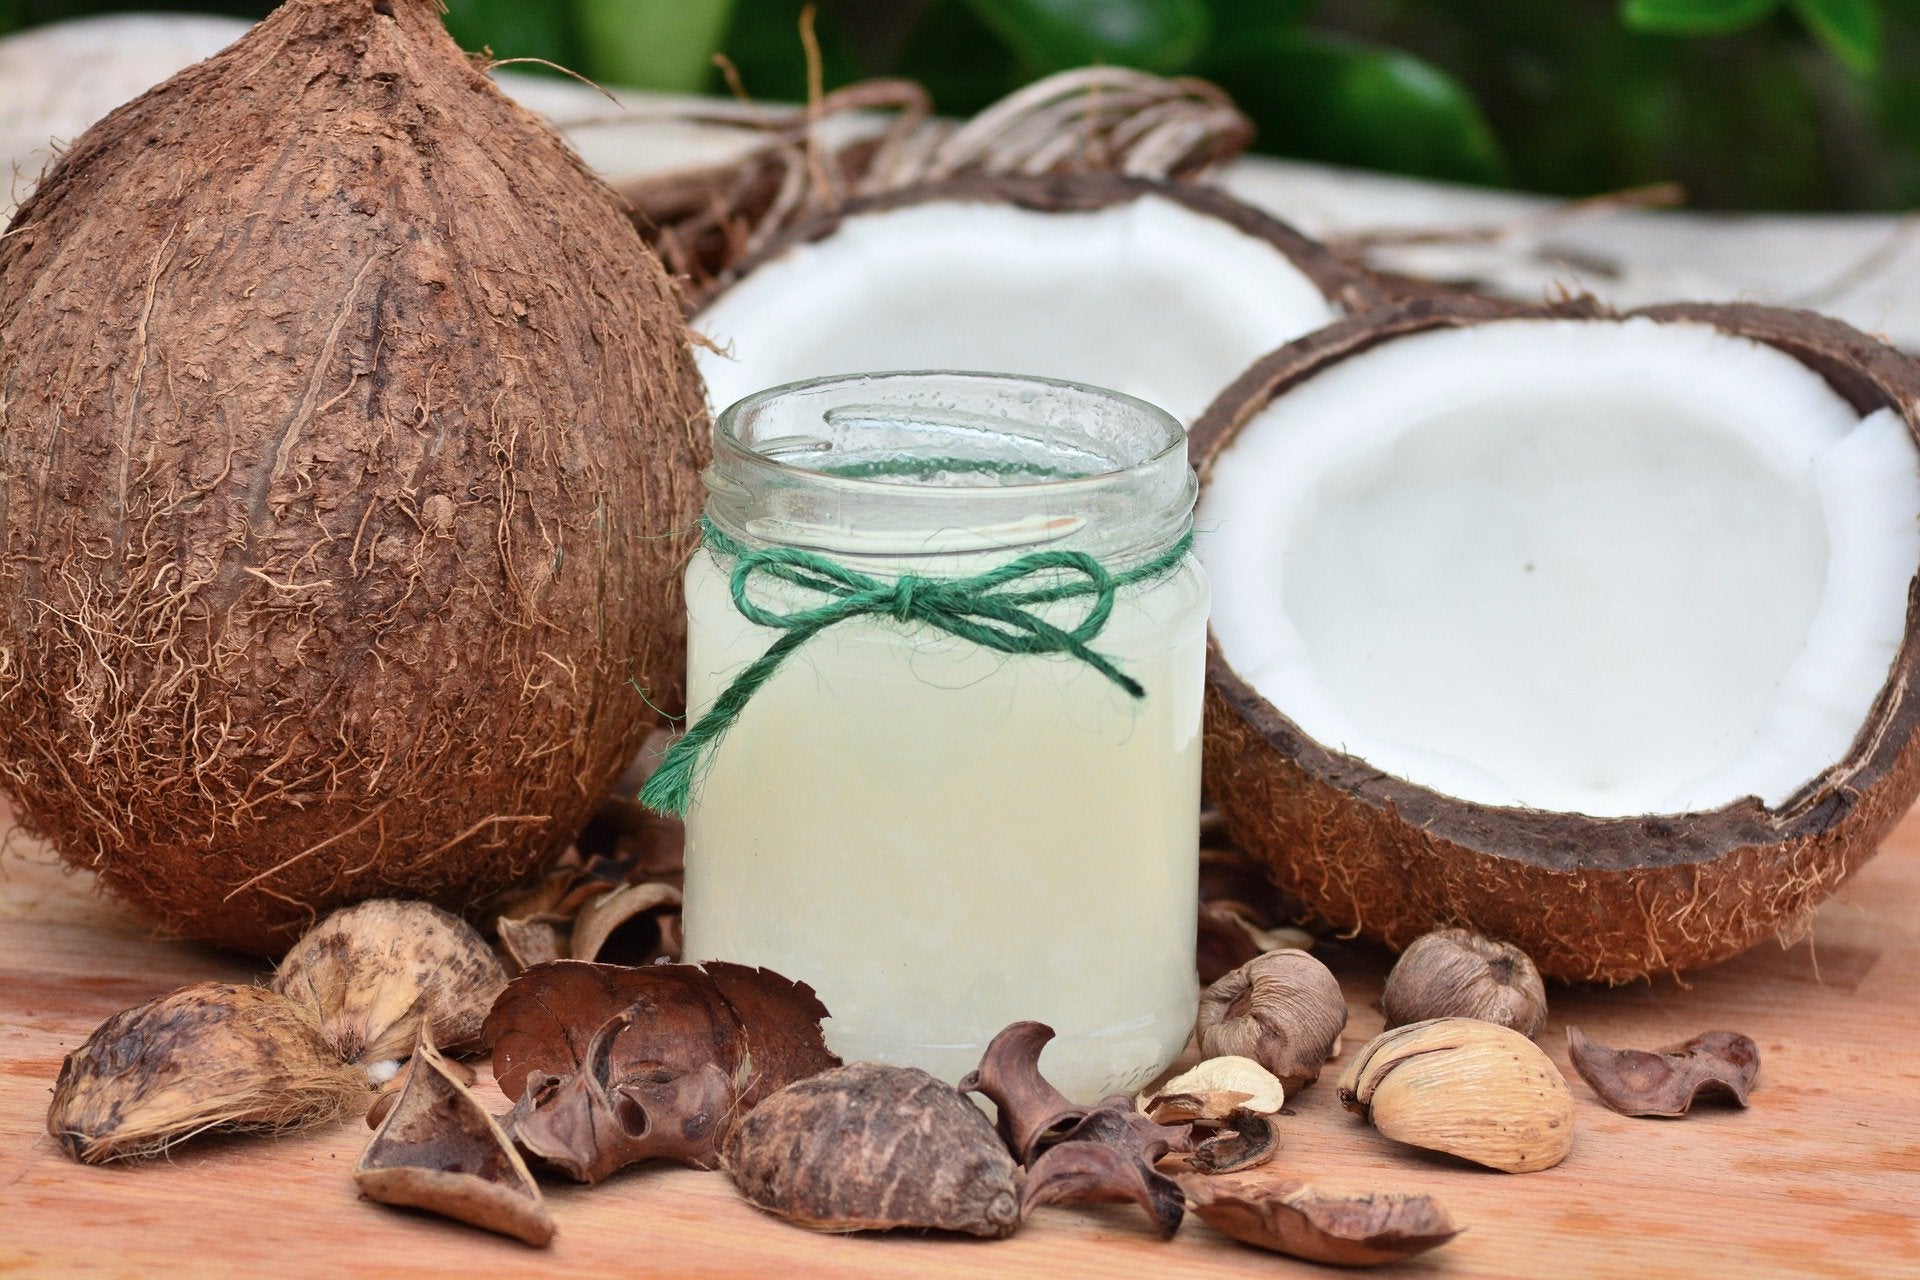 Zmarszczki lub rozstępy odbierają Ci pewność siebie? Wypróbuj olej kokosowy a przekonasz się, że jego cudowne właściwości przywrócą Twojej skórze jędrność i elastyczność!